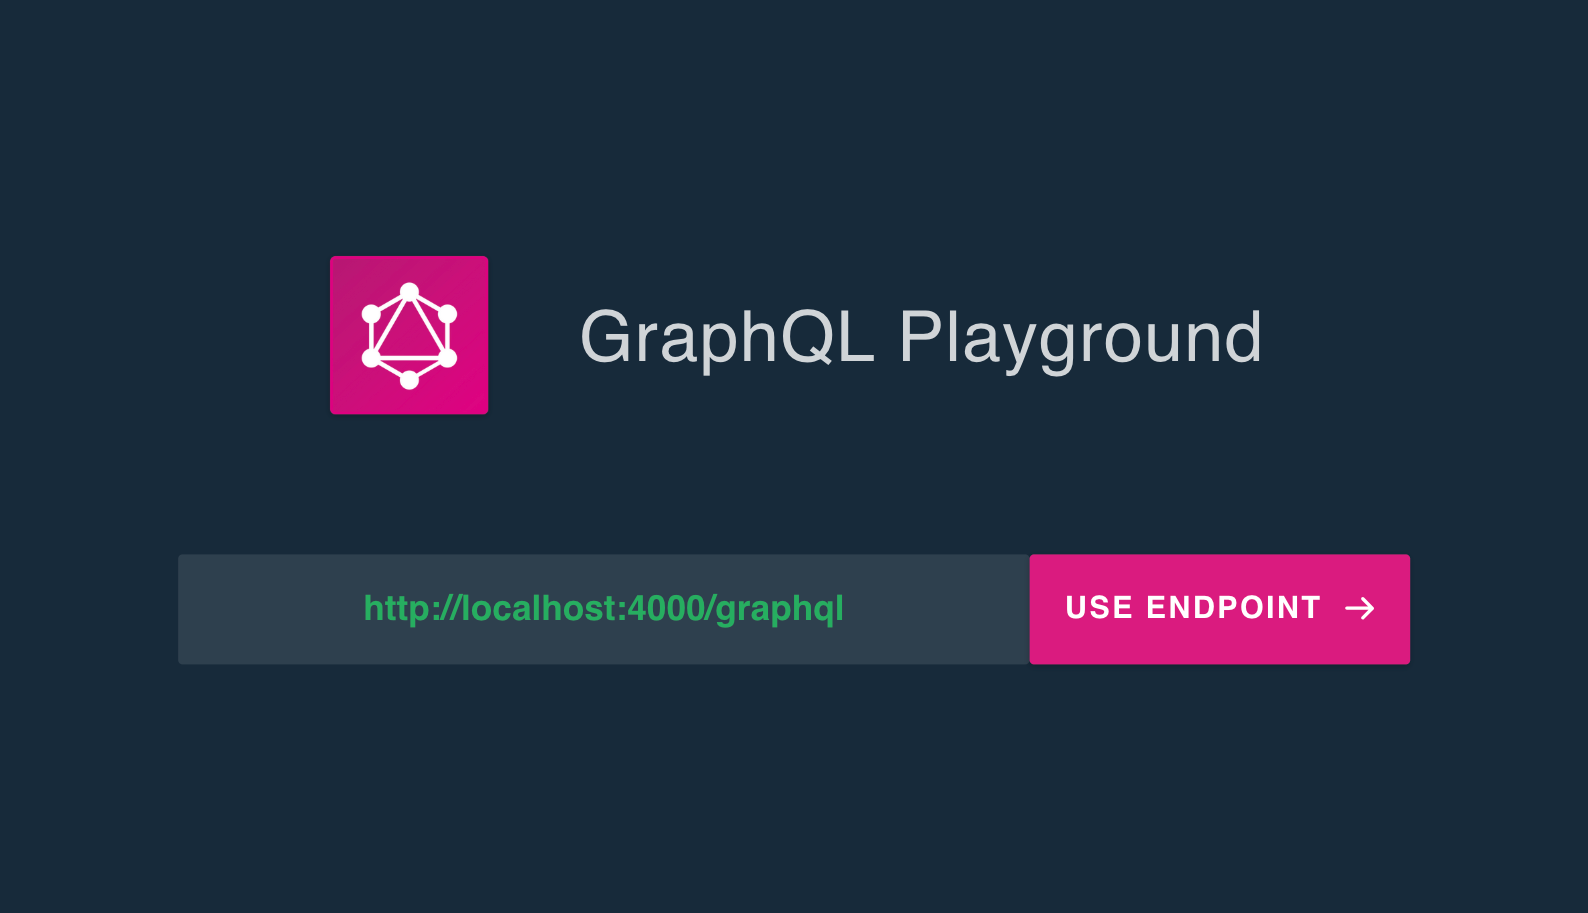 graphql playground - enter endpoint url